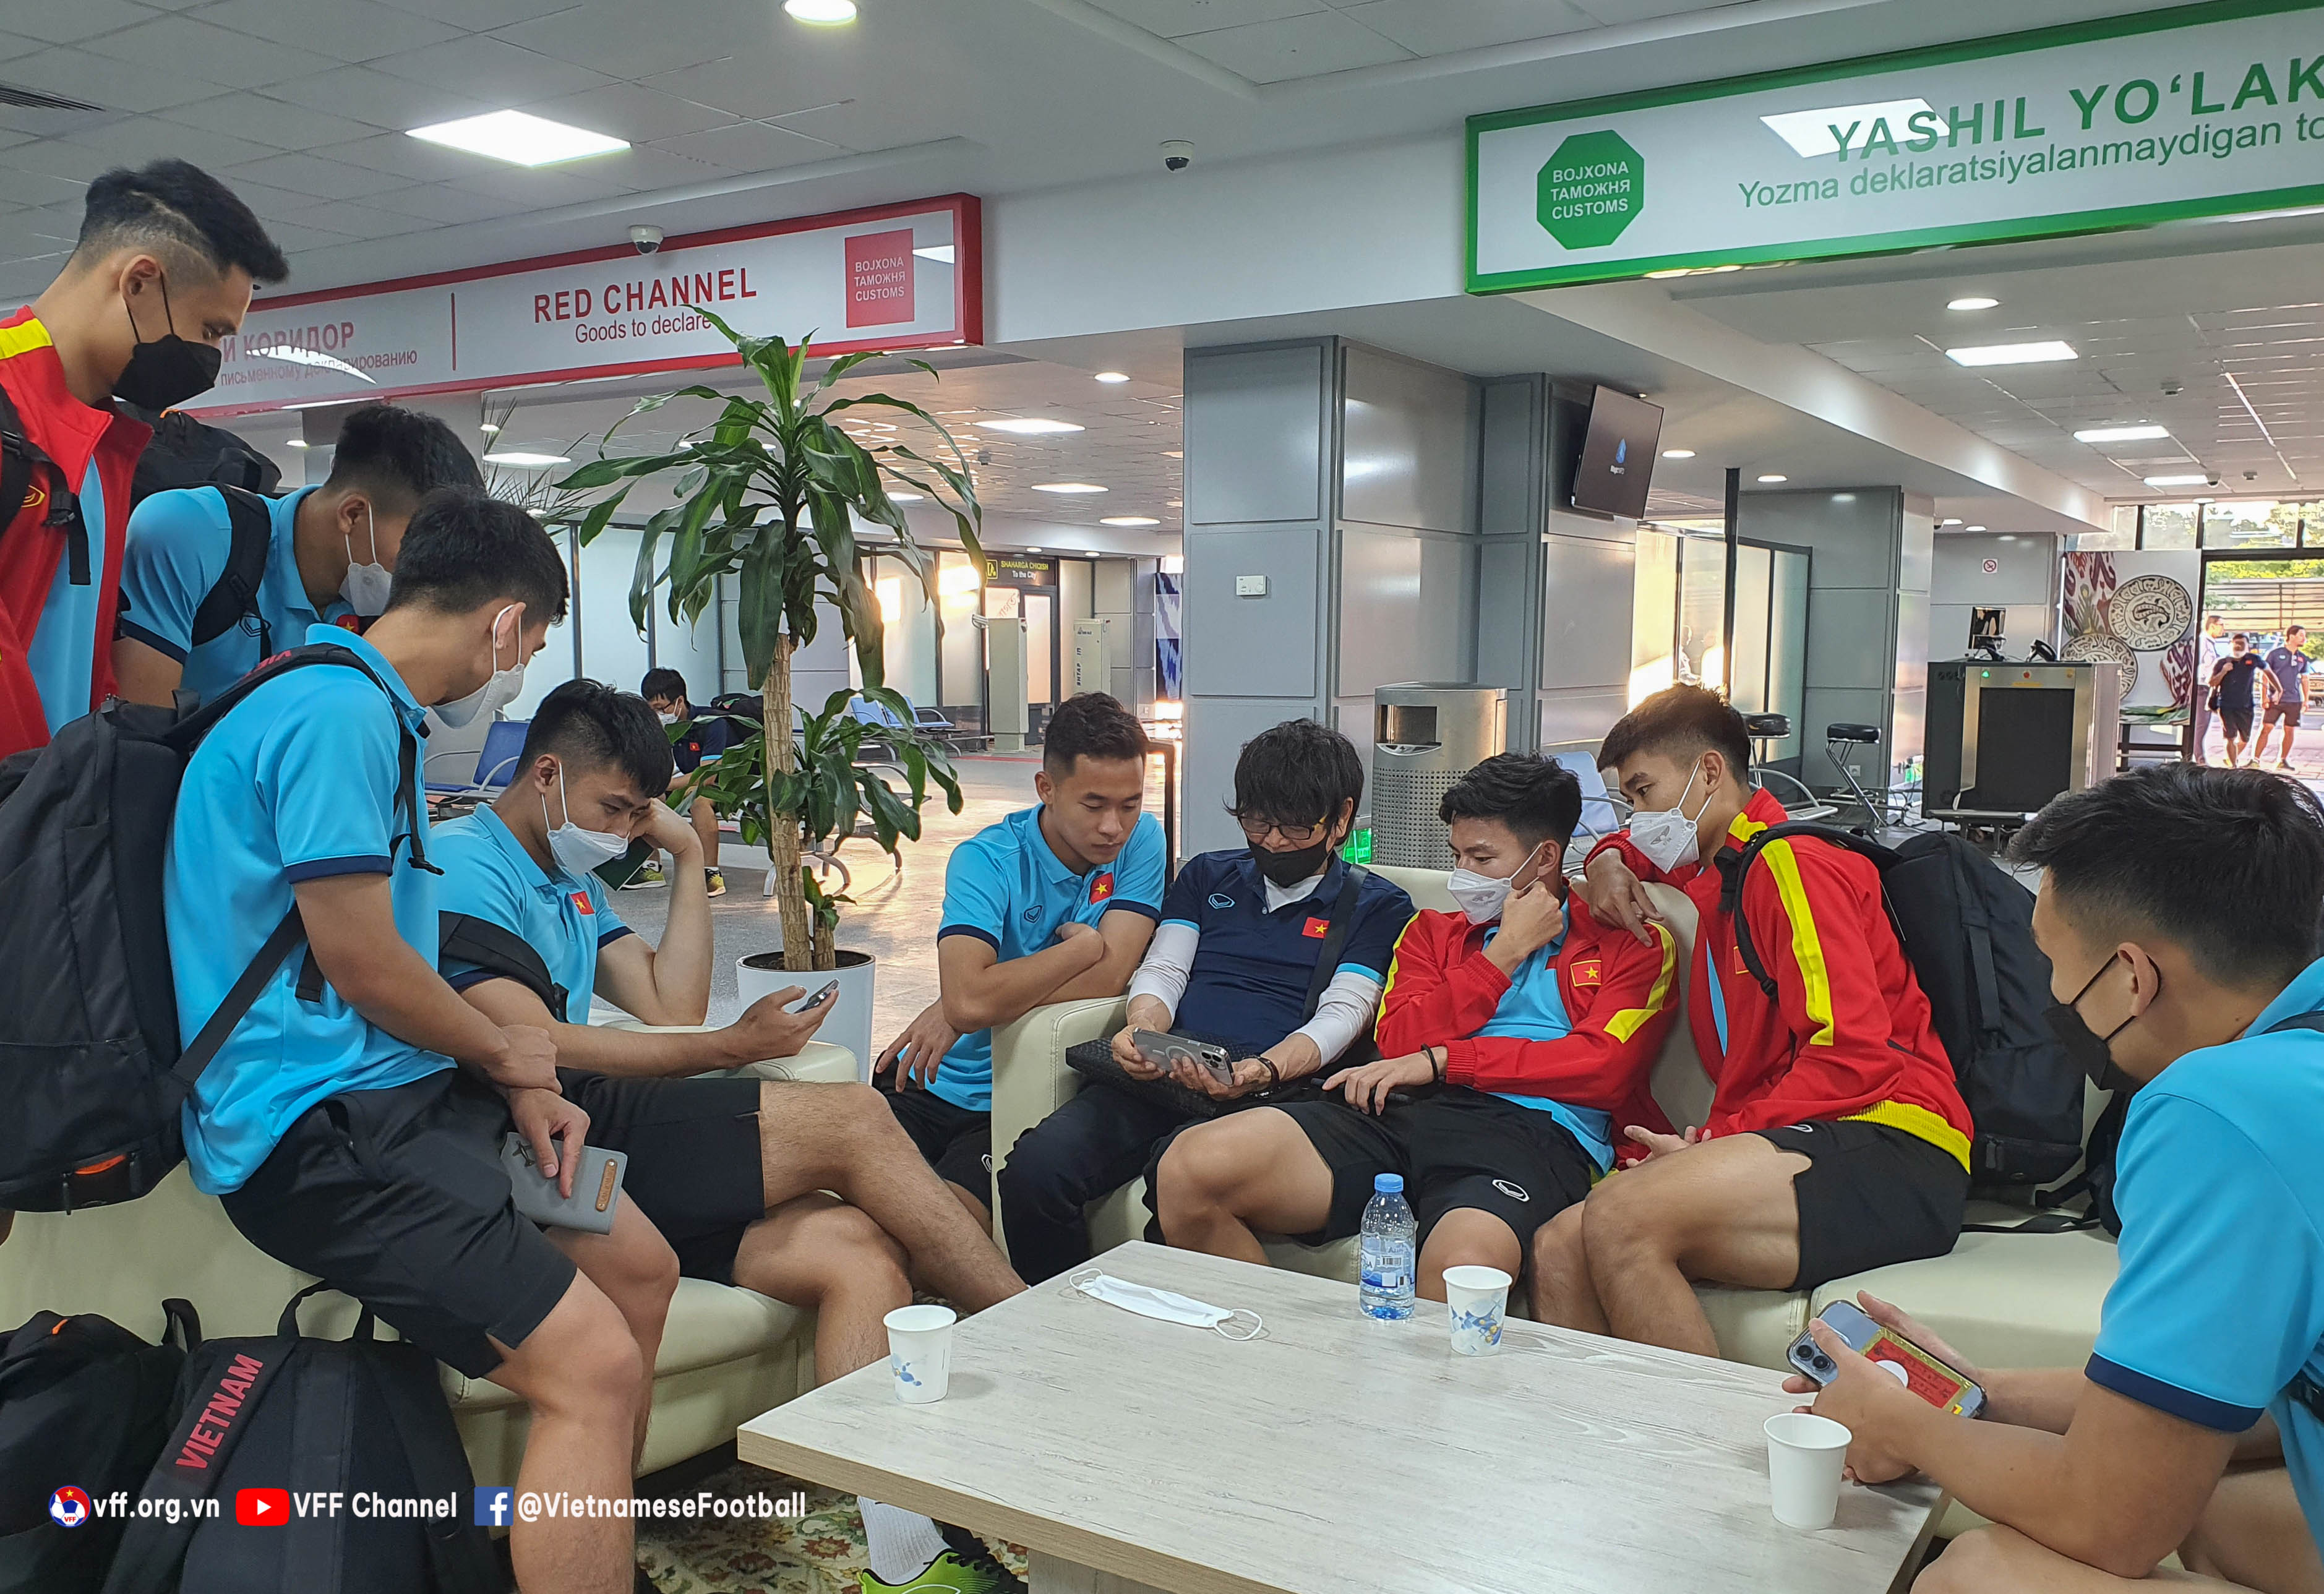 U23 Việt Nam đã có mặt ở Uzbekistan chuẩn bị cho VCK U23 châu Á 2022 - Ảnh: VFF 